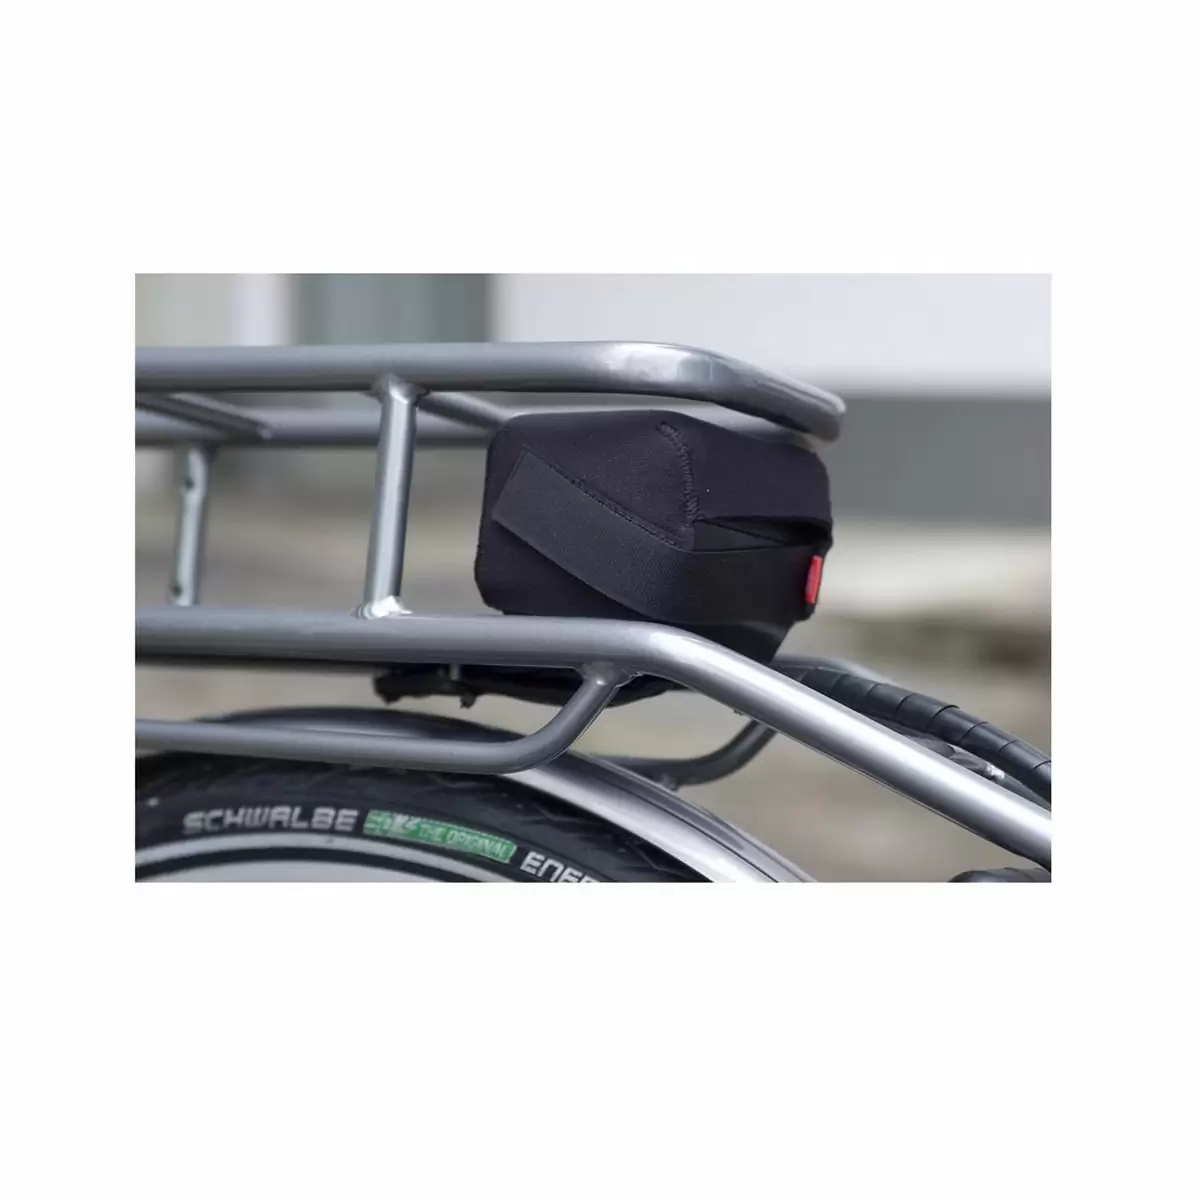 Cover di protezione contatti batteria al portapacchi taglia L / Bosch Yamaha Shimano - image